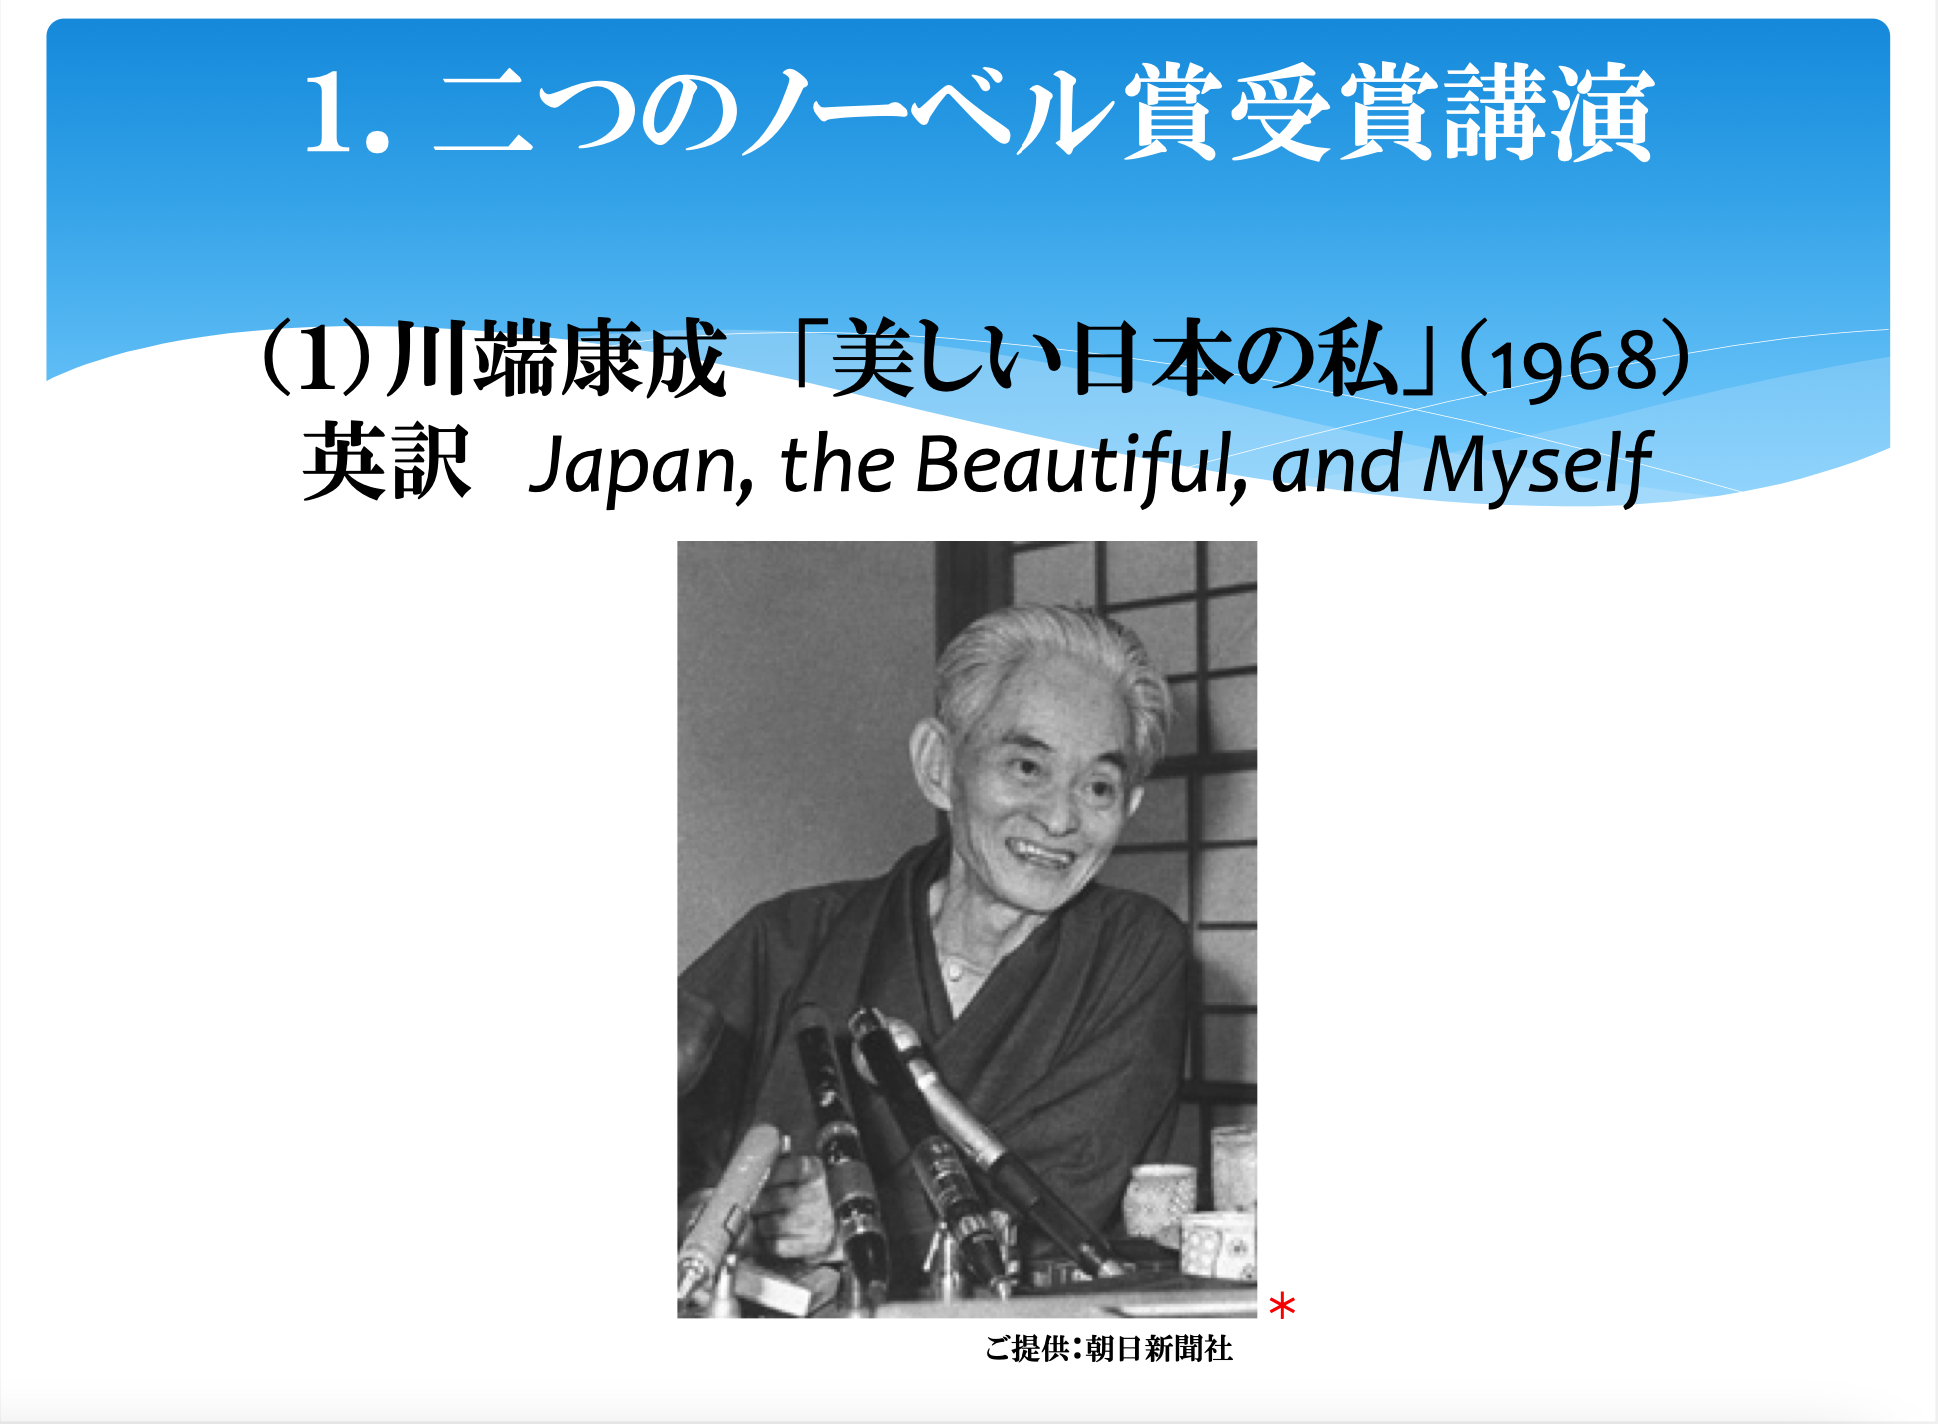 大江健三郎の語る「あいまいな日本の私」】文学の境界について考える ...